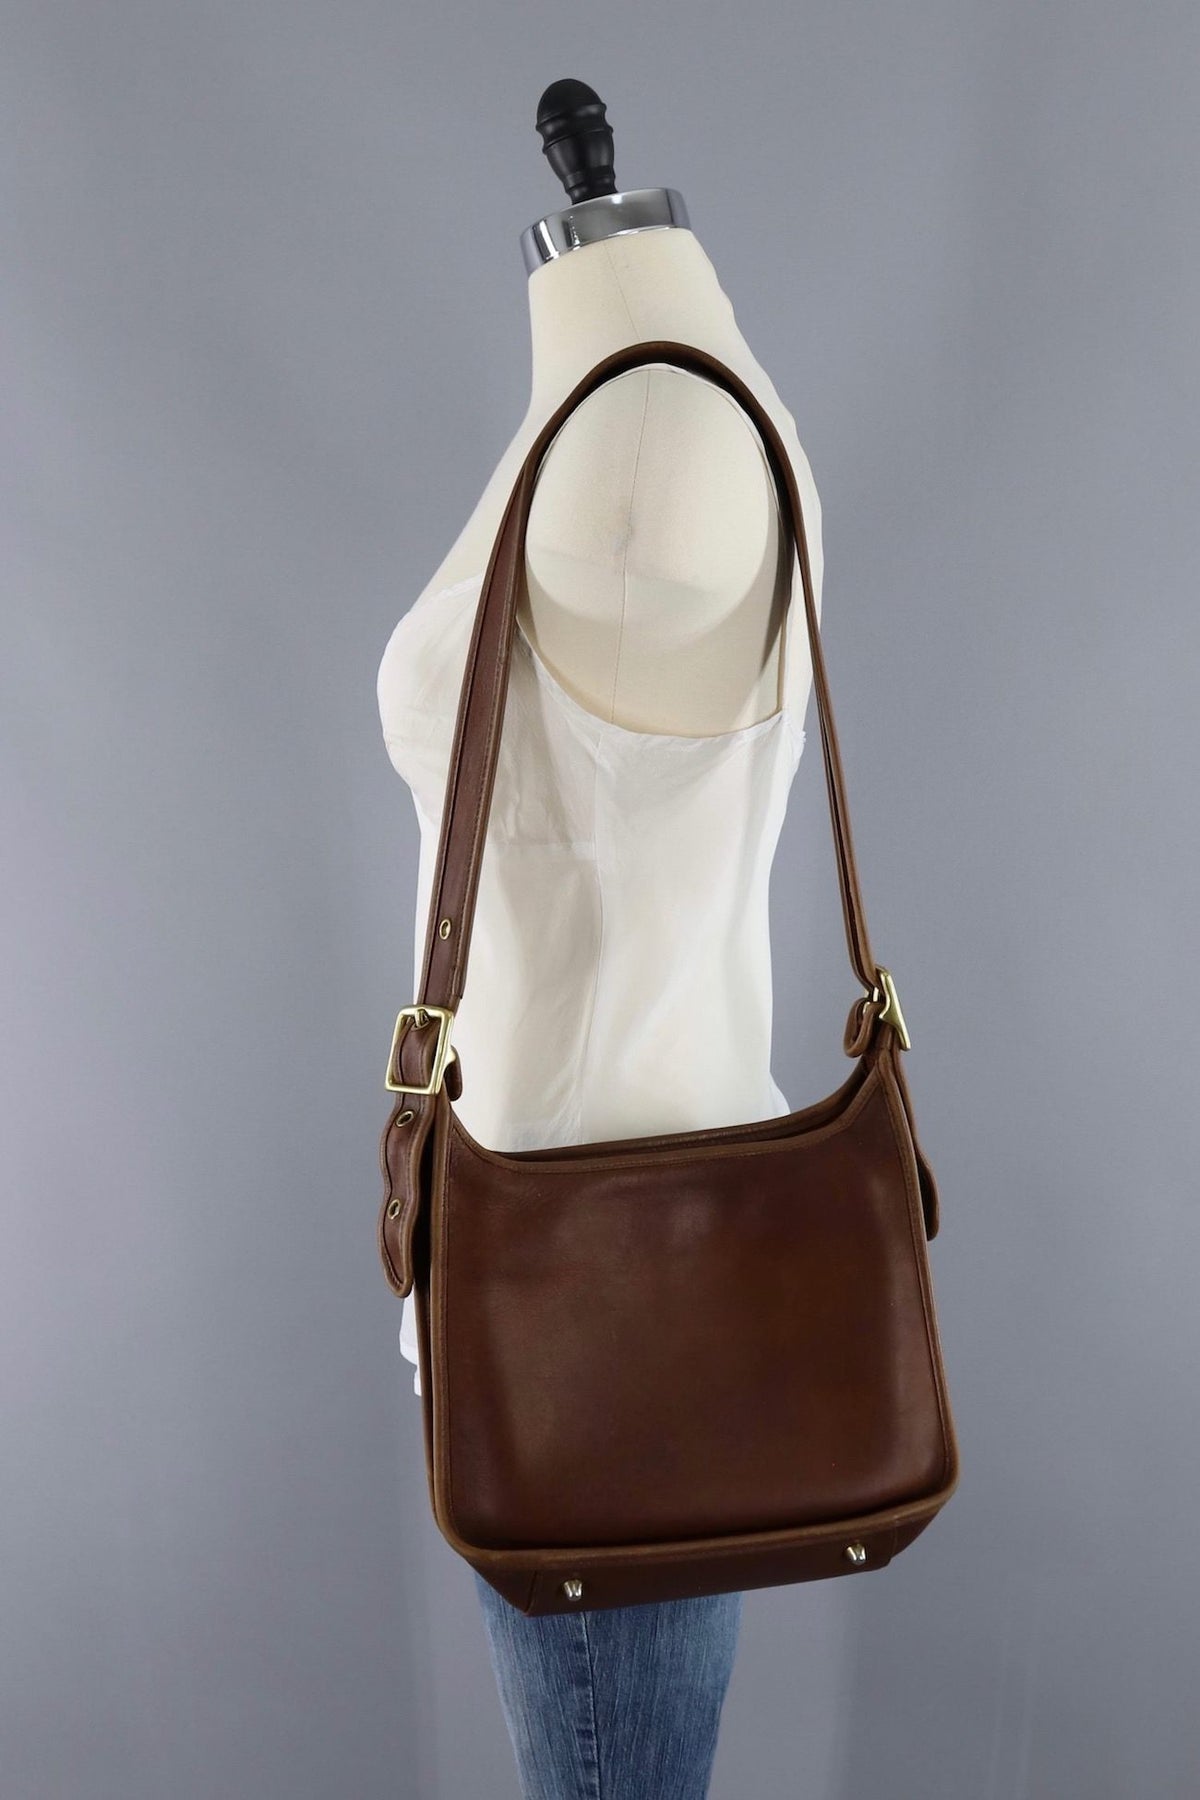 Vintage Coach handbag  Coach handbags, Vintage coach bags, Vintage coach